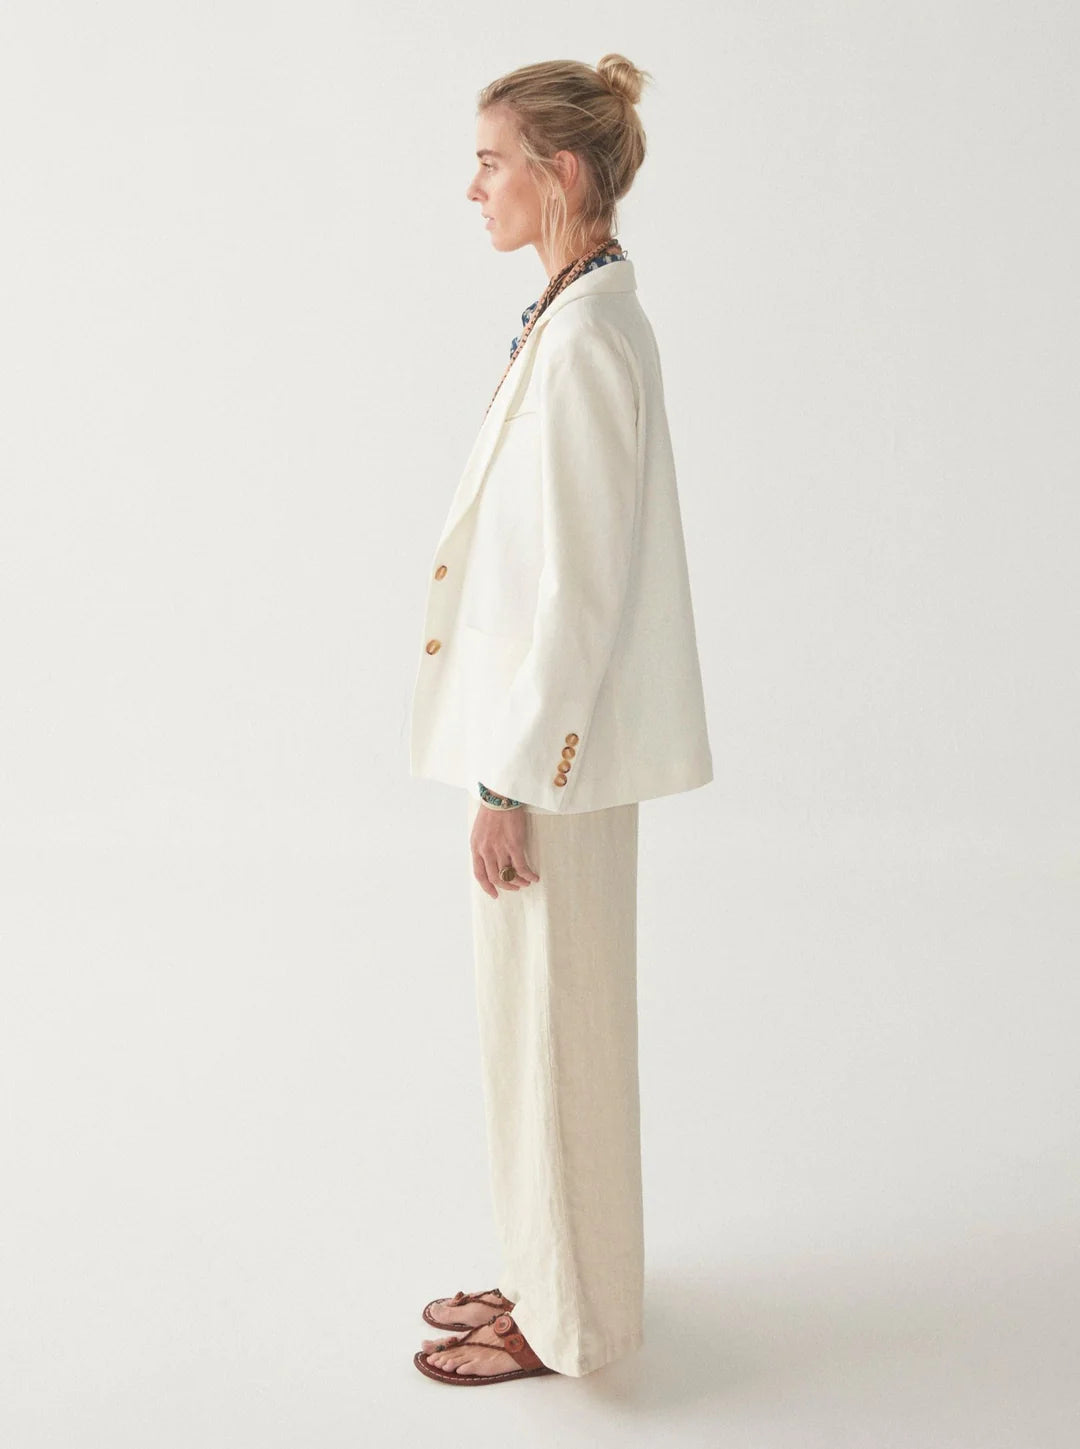 Model wears linen blazer jacket in white